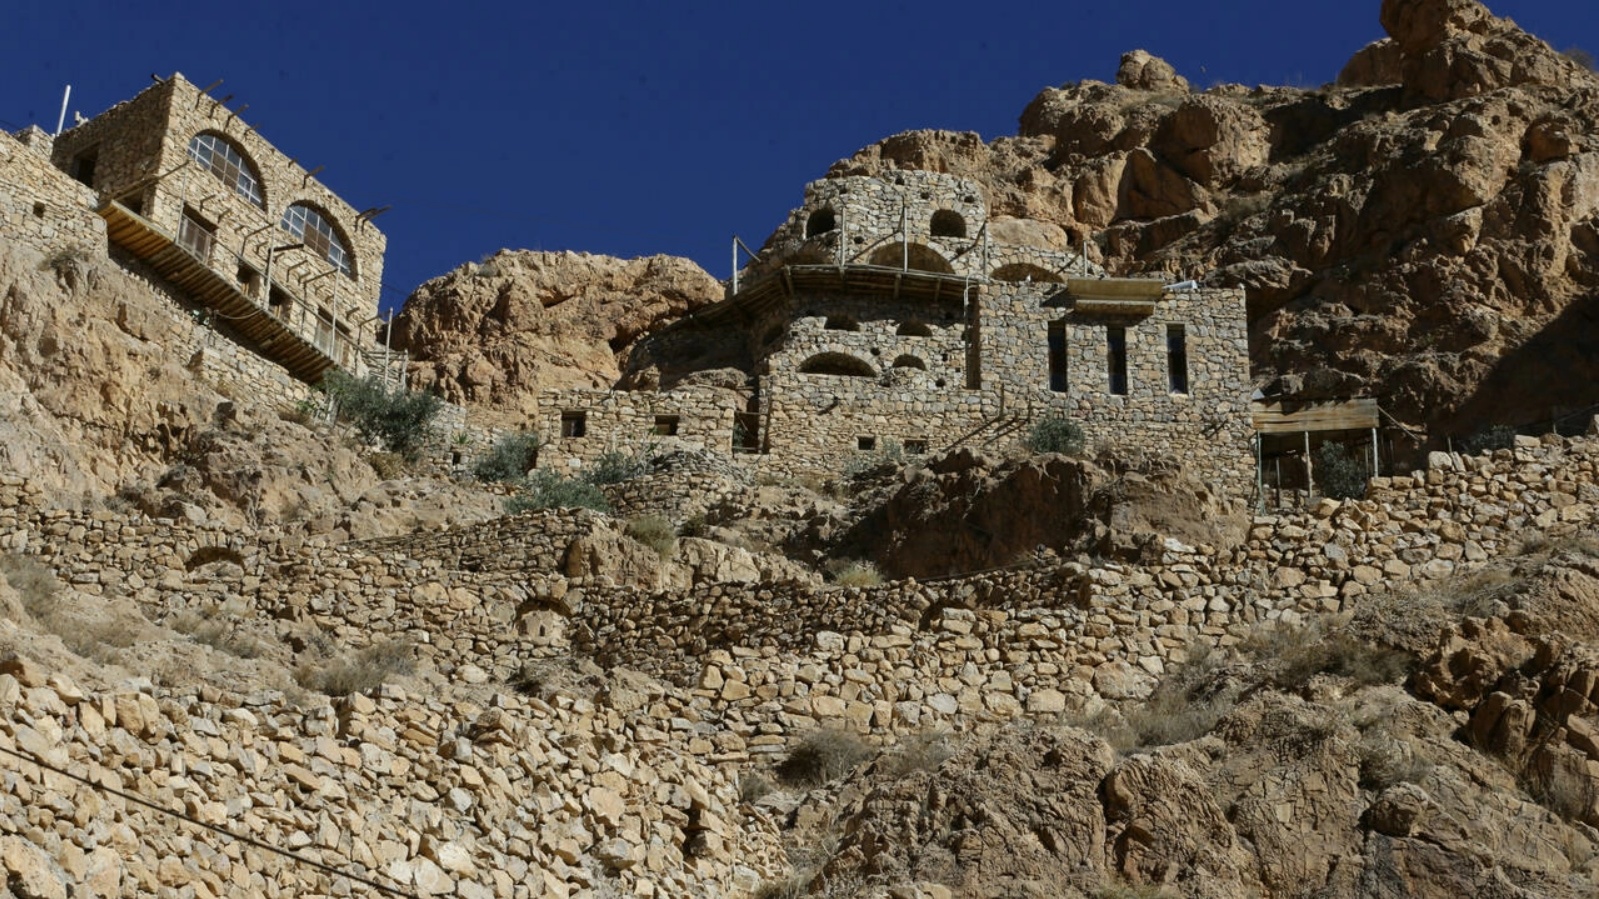 صورة عامة لدير مار موسى الحبشي القديم في الجبالقرب منطقة النبك على بعد مئة كيلومتر شمال العاصمة دمشق، ملتقطة في 11 يونيو 2022